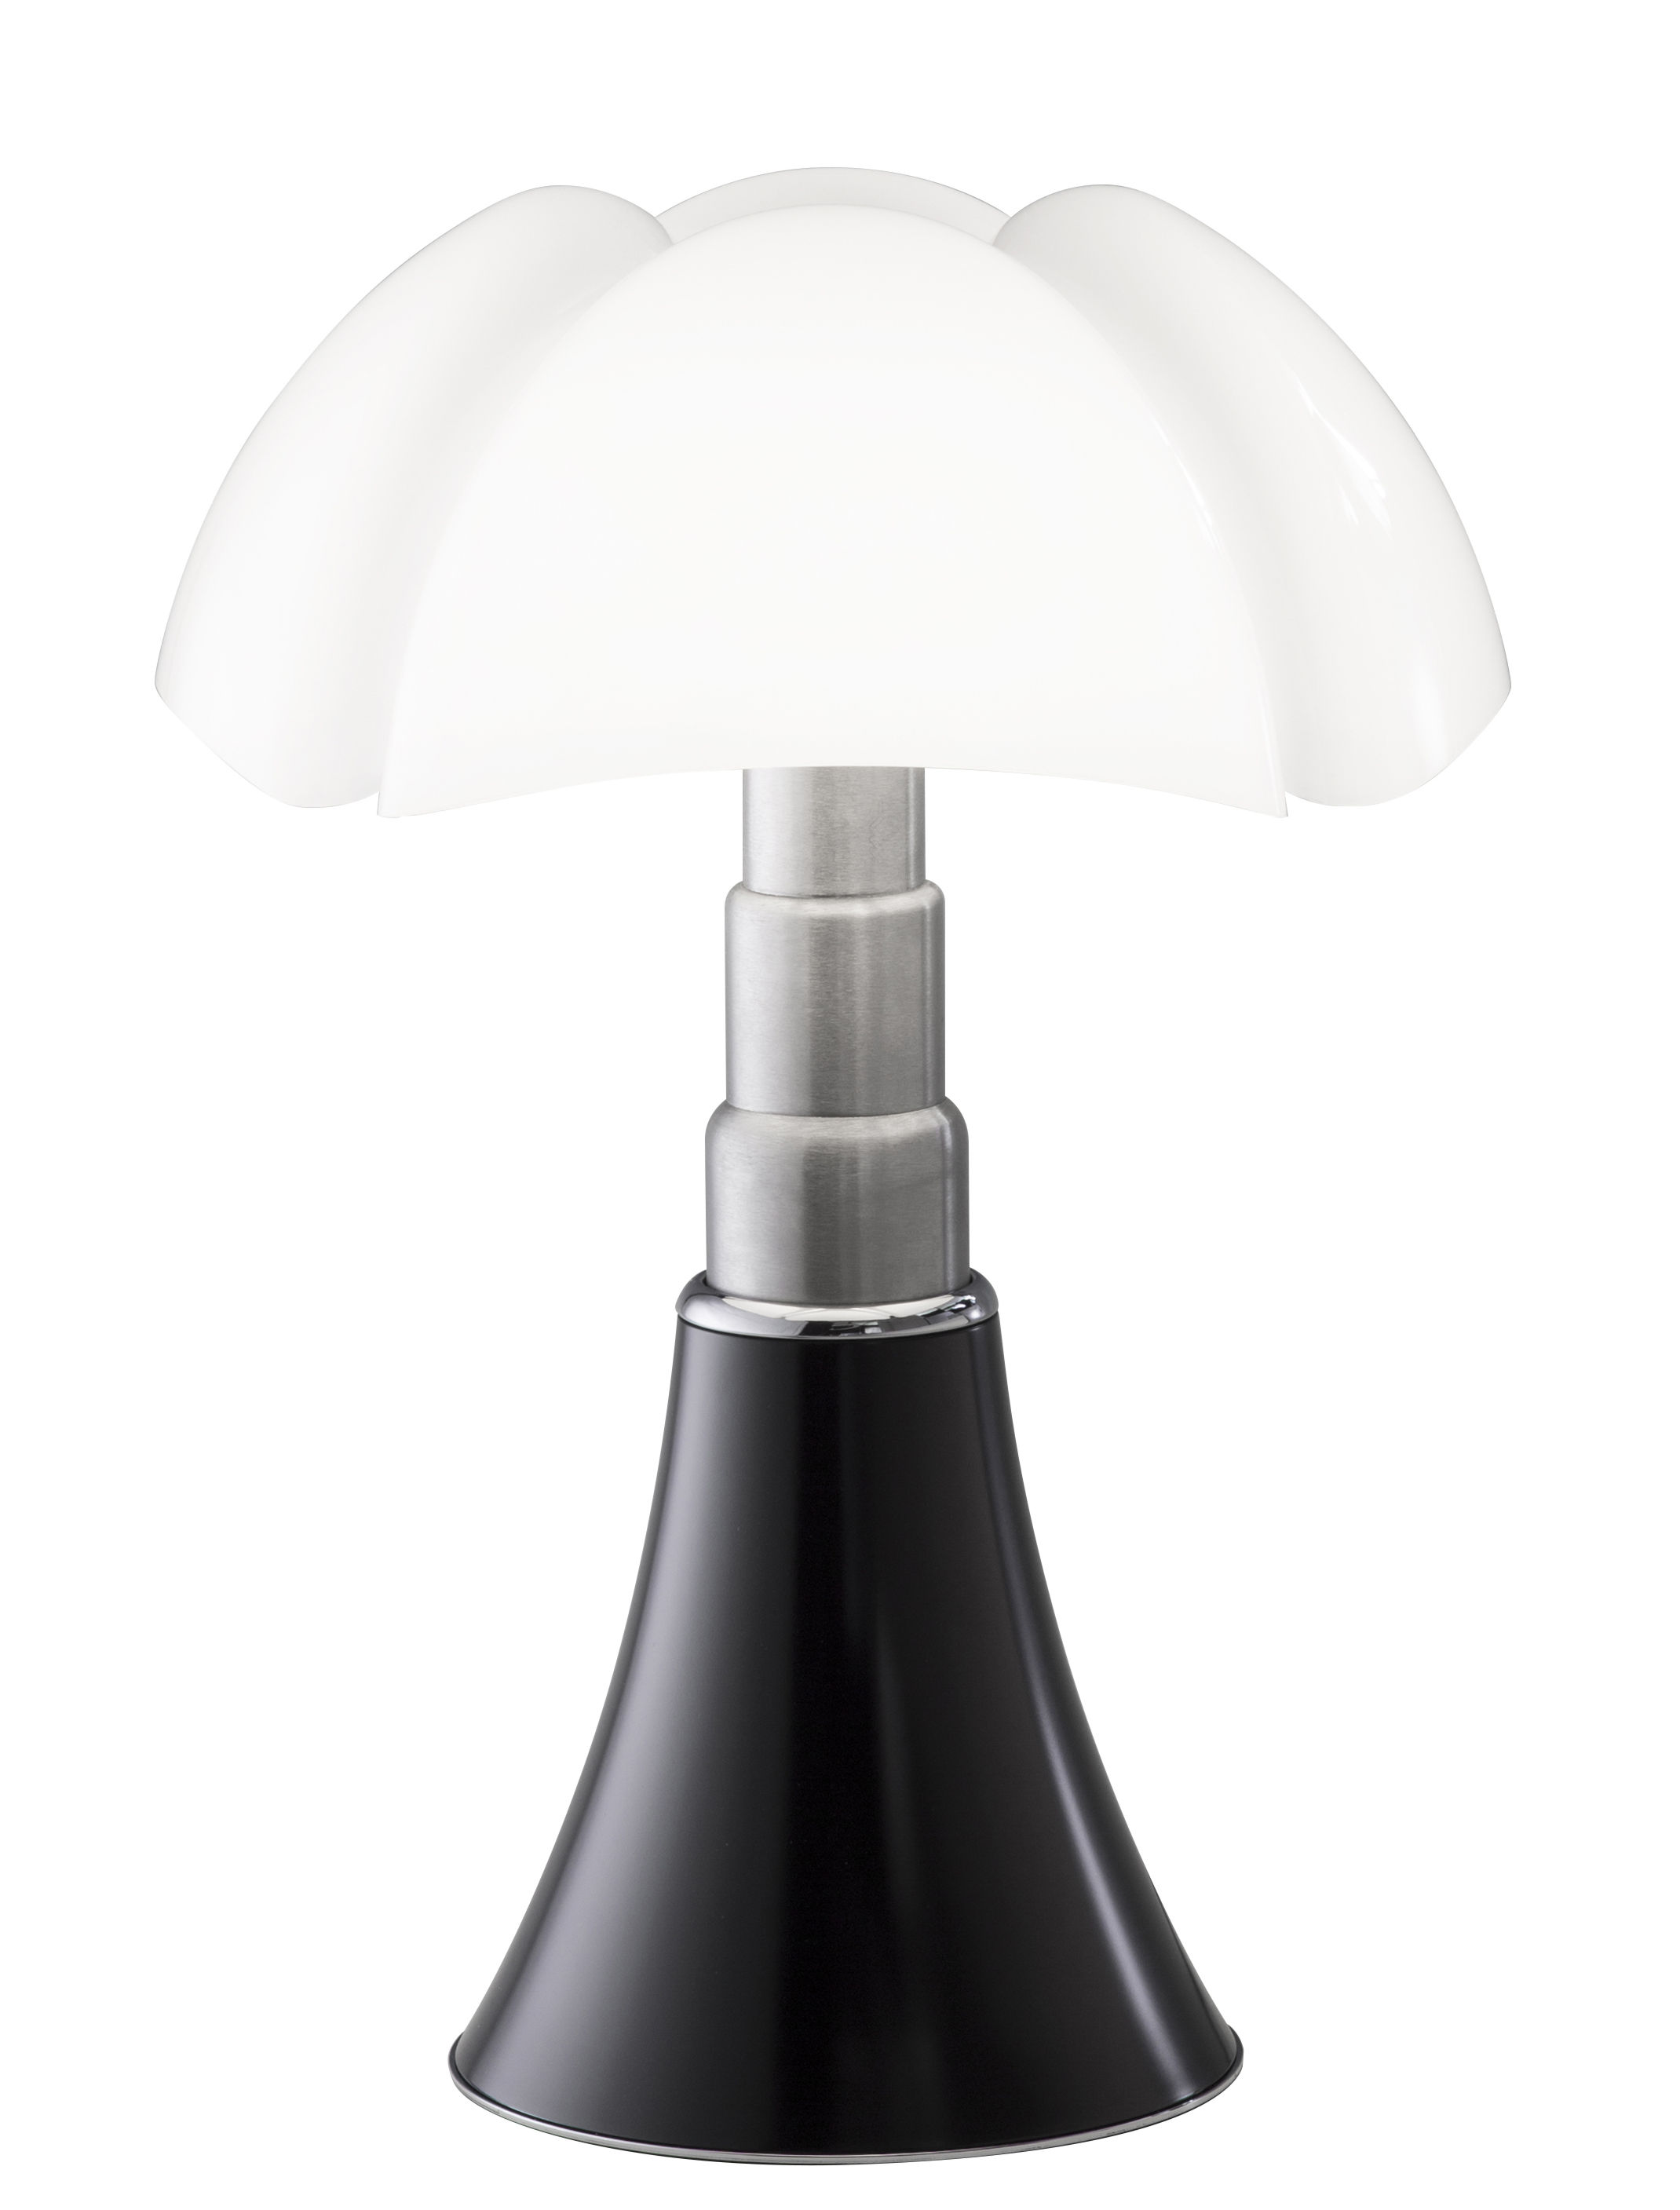 Lampe Pipistrello Medium Martinelli - Marron Made in Design